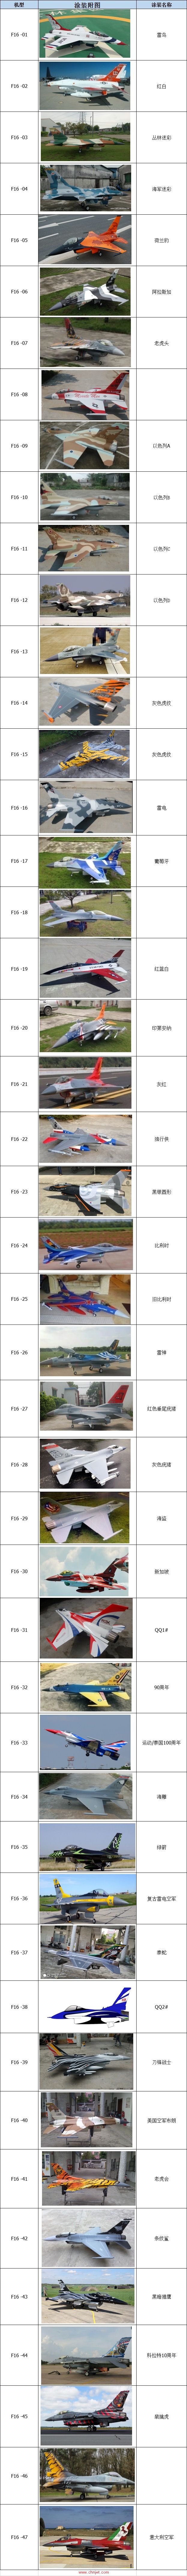 SPARK涡喷模型飞机涂装表